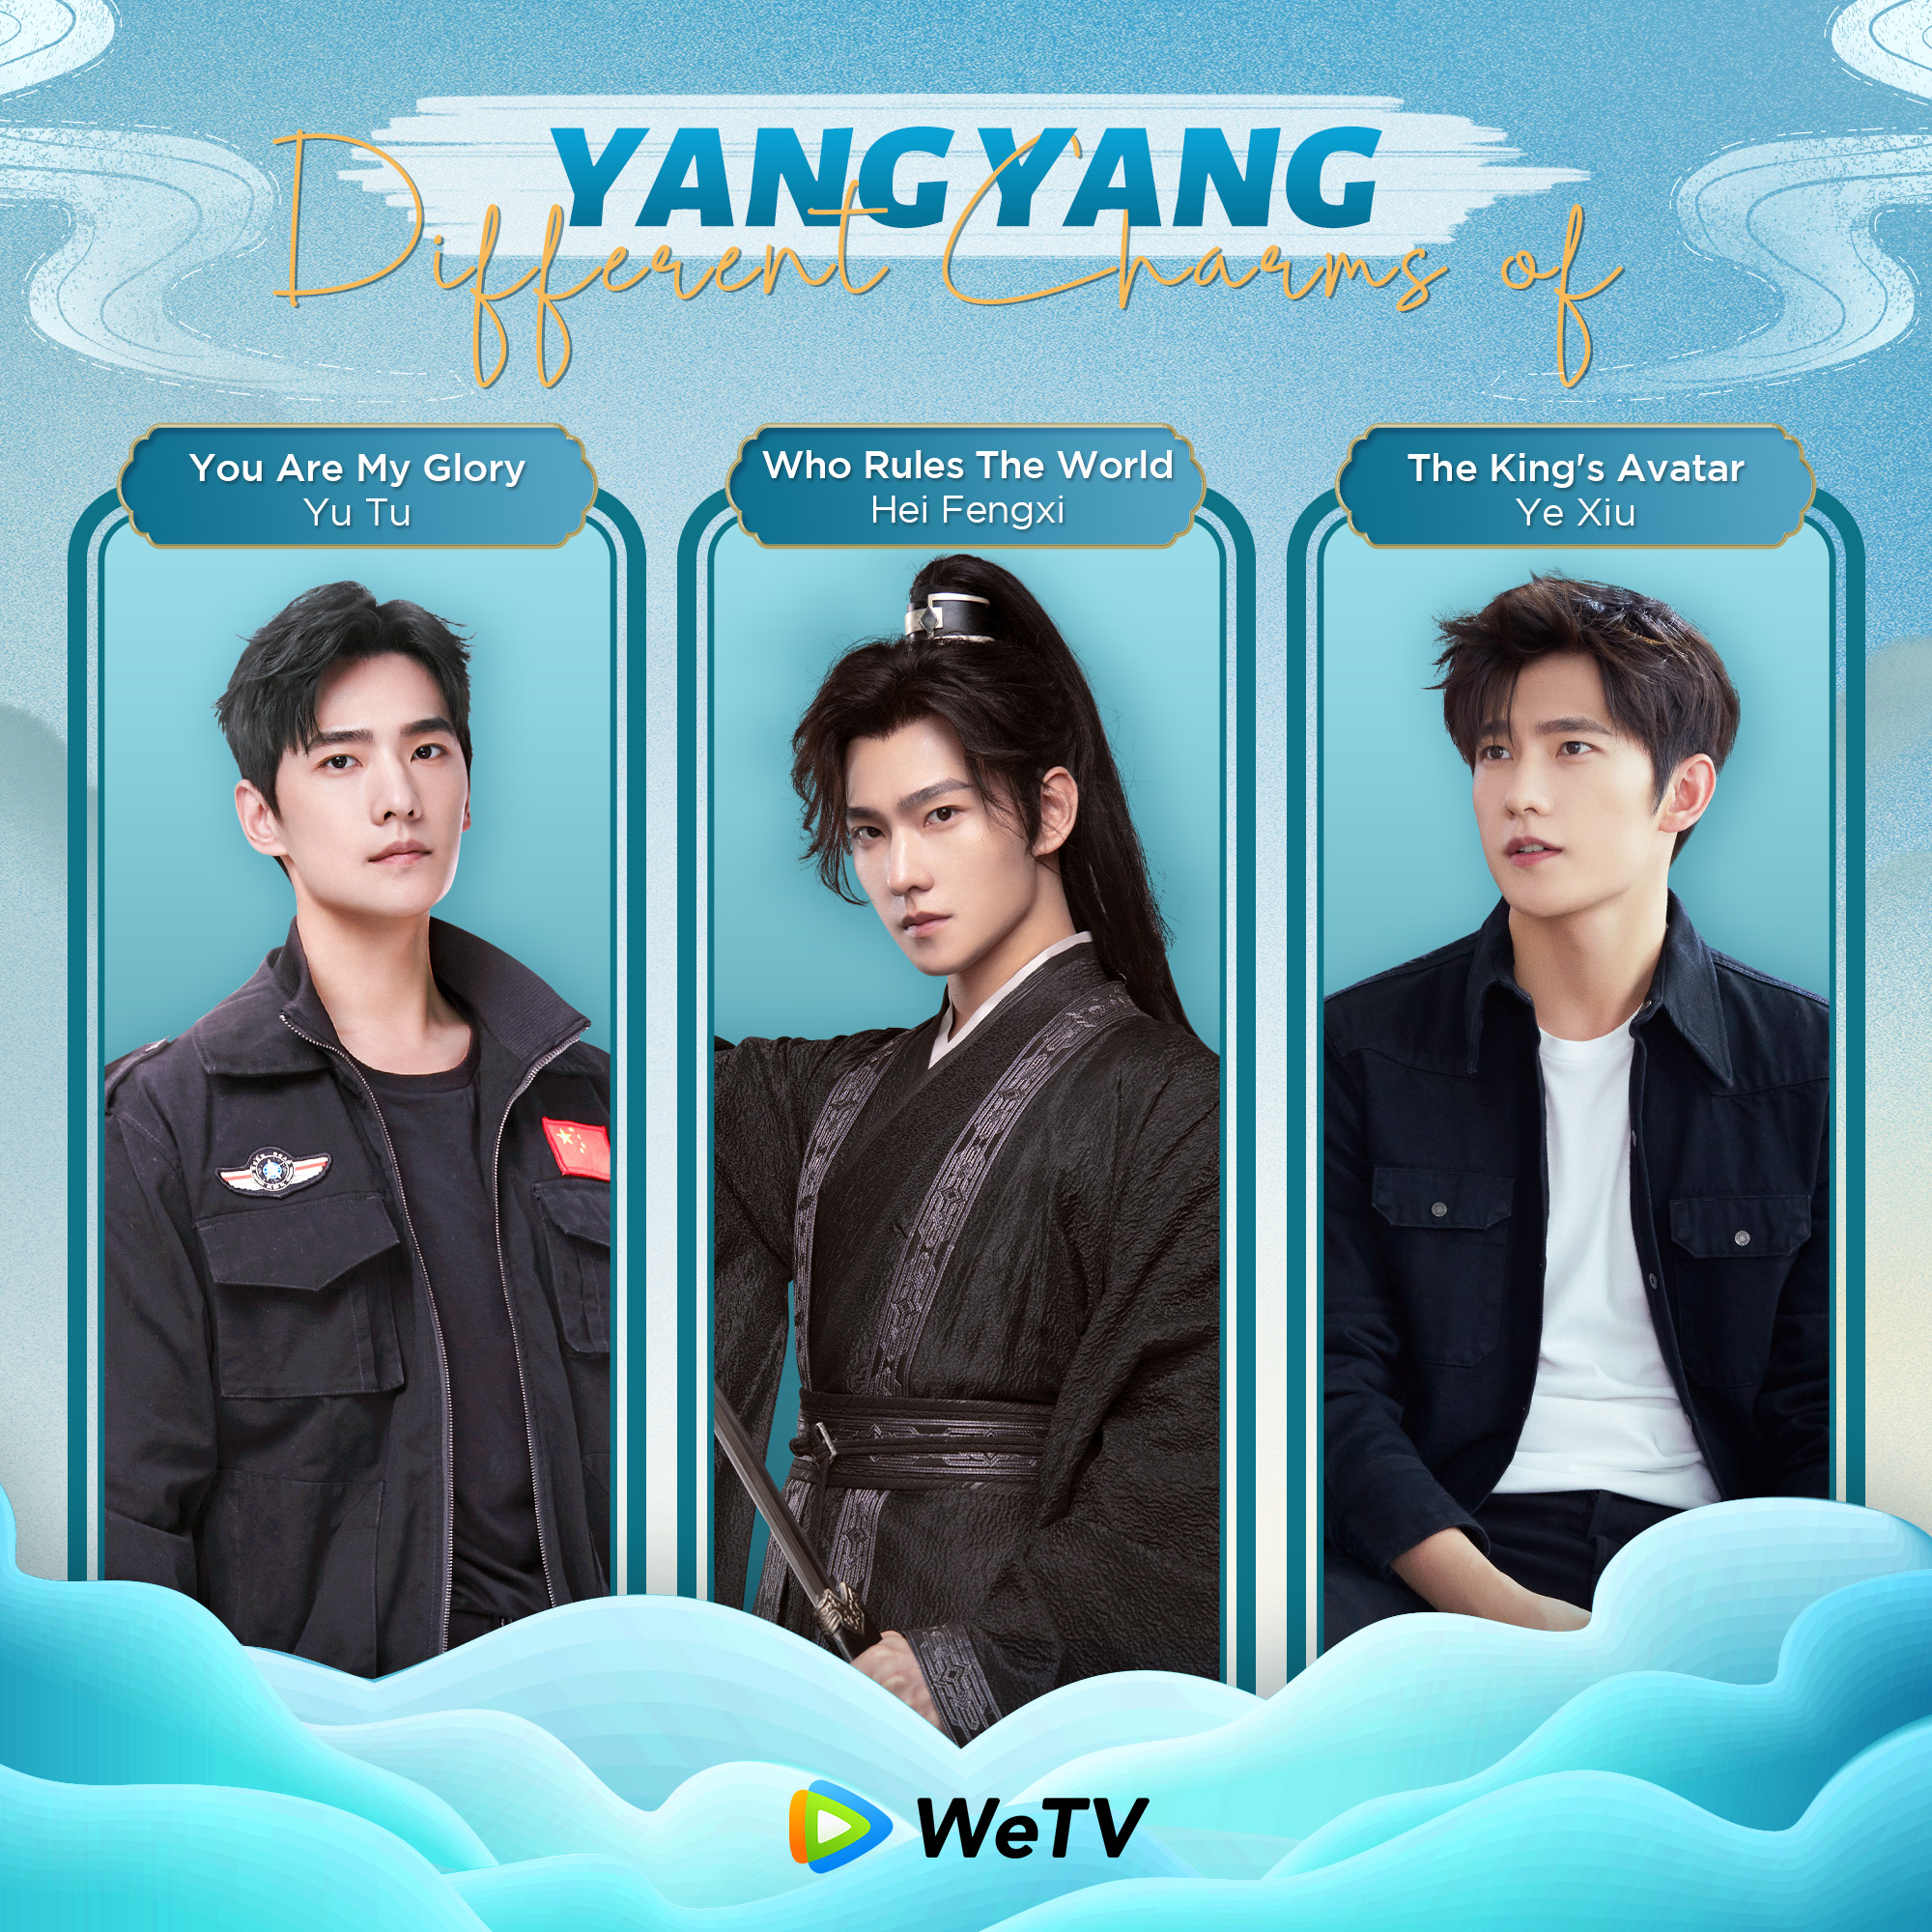 杨洋 #楊洋 #YangYang  King's avatar, The king's avatar yang yang